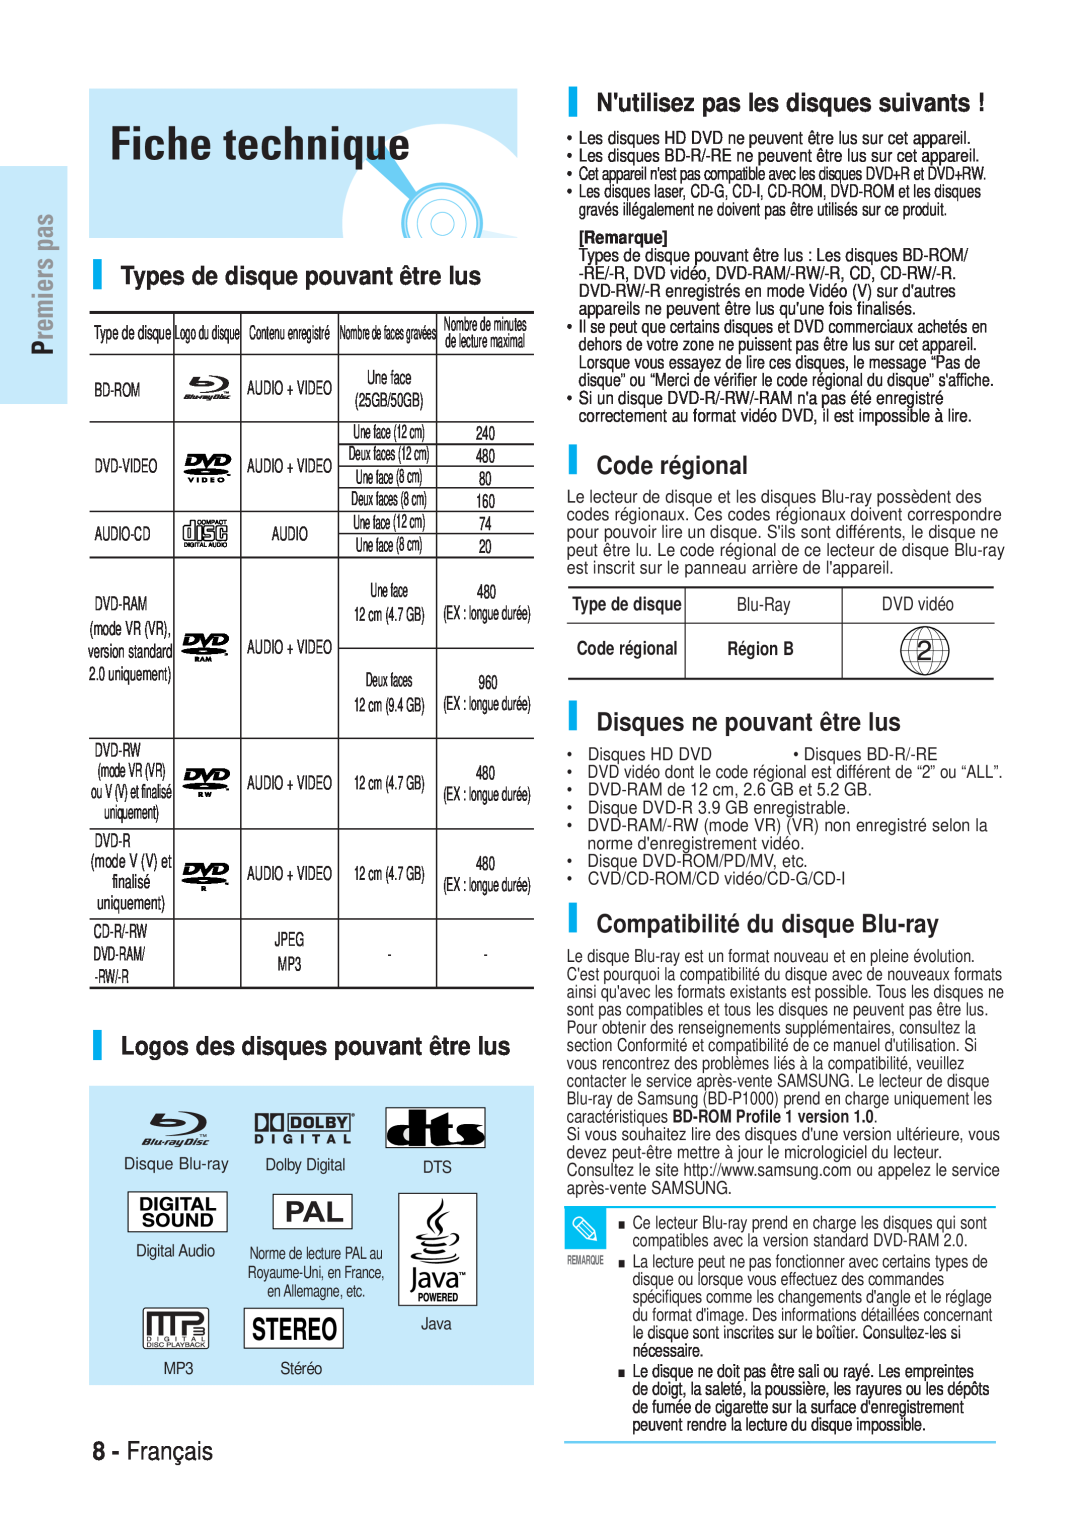 Samsung BD-P1000/XEL manual Fiche technique, Types de disque pouvant être lus, Logos des disques pouvant être lus, Français 